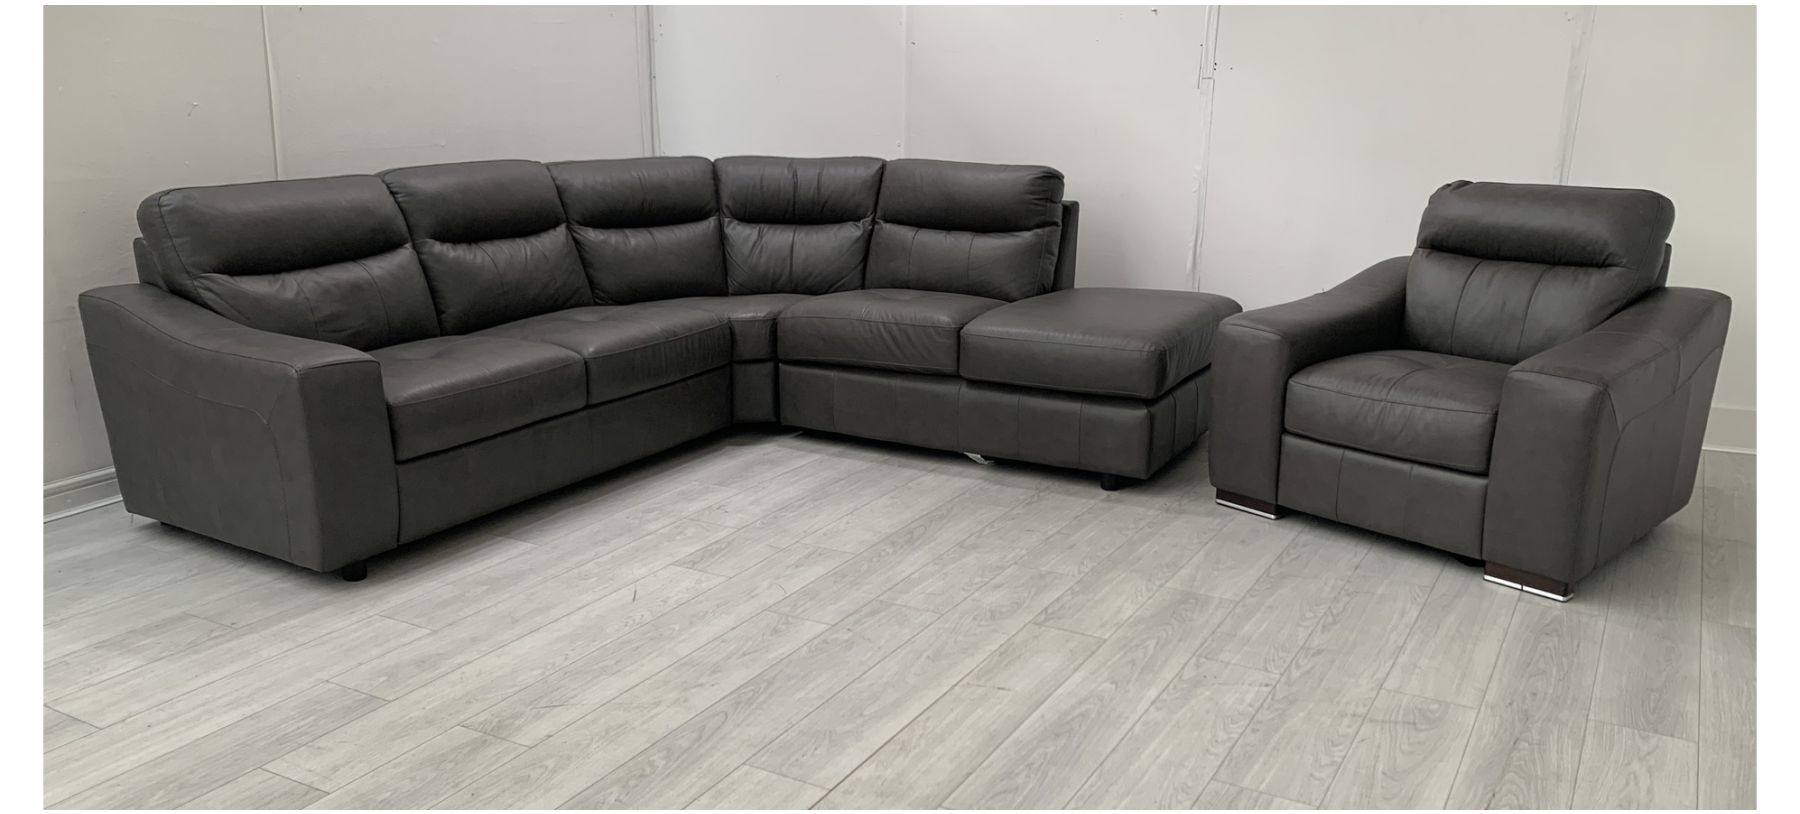 Palermo Grey Rhf Leather Corner Sofa